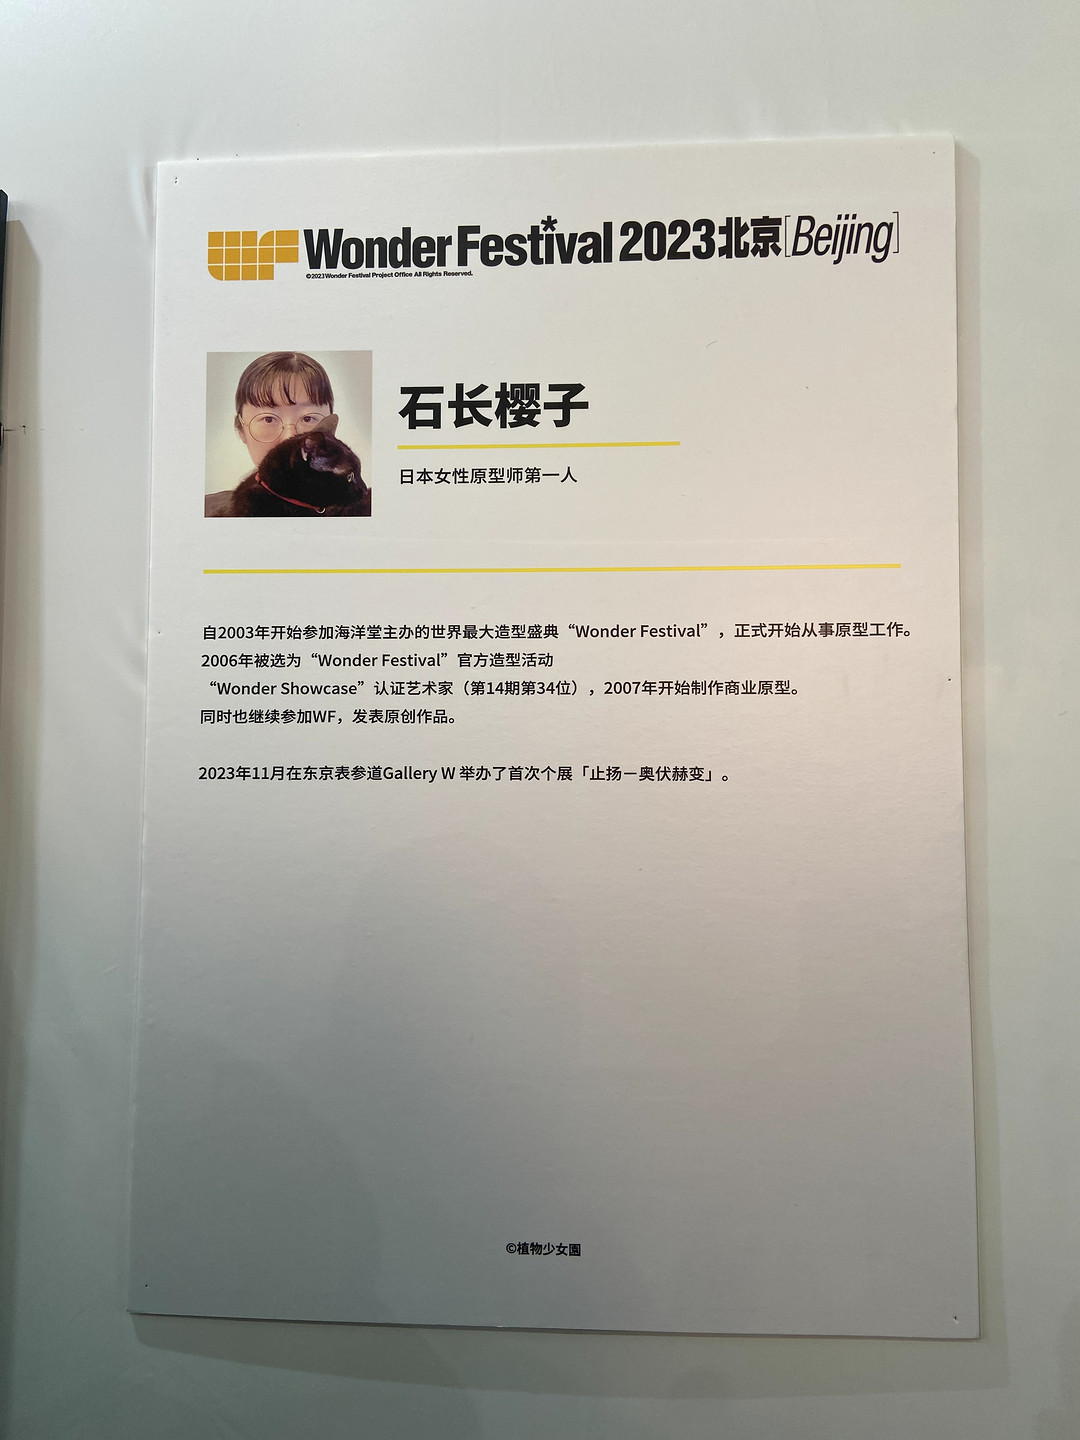 粉丝狂喜！艺术家亲临WF2023北京与广大玩家签名互动